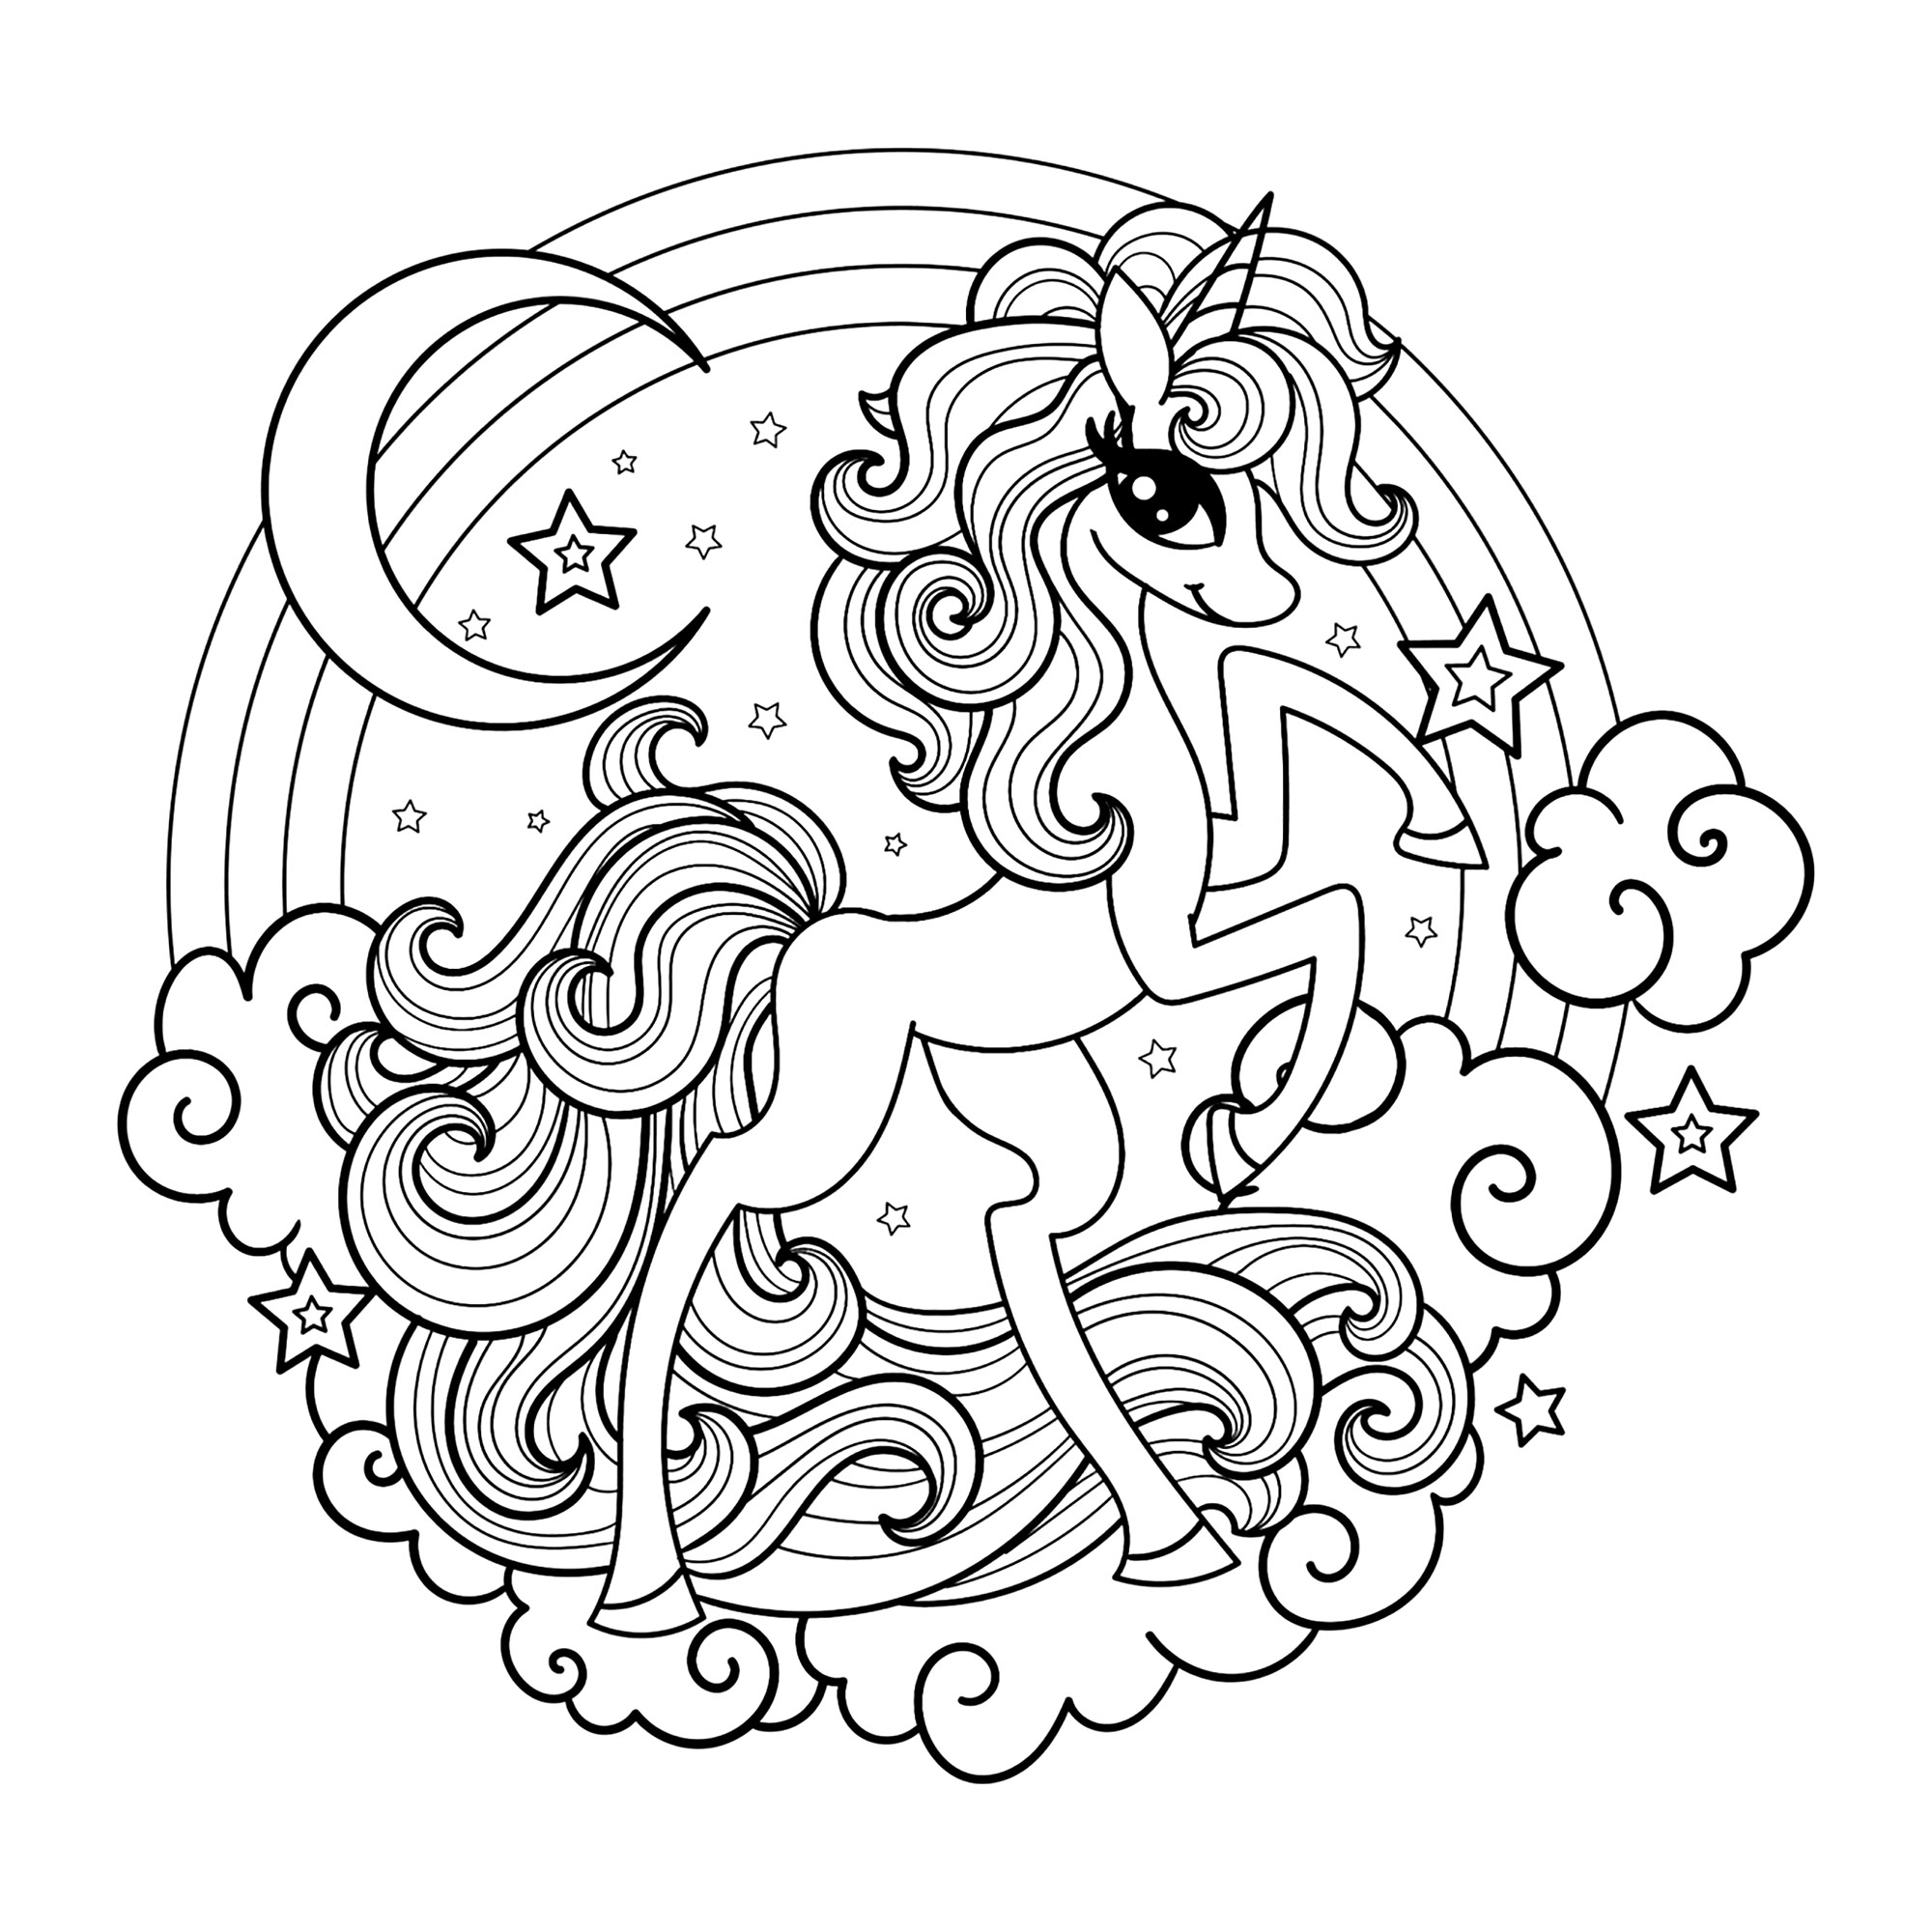 Un unicornio moderno y con estilo. Colorea este bonito unicornio y el arco iris que tiene detrás, así como la luna, las nubes y las estrellas que lo rodean, Origen : 123rf   Artista : Zerlina